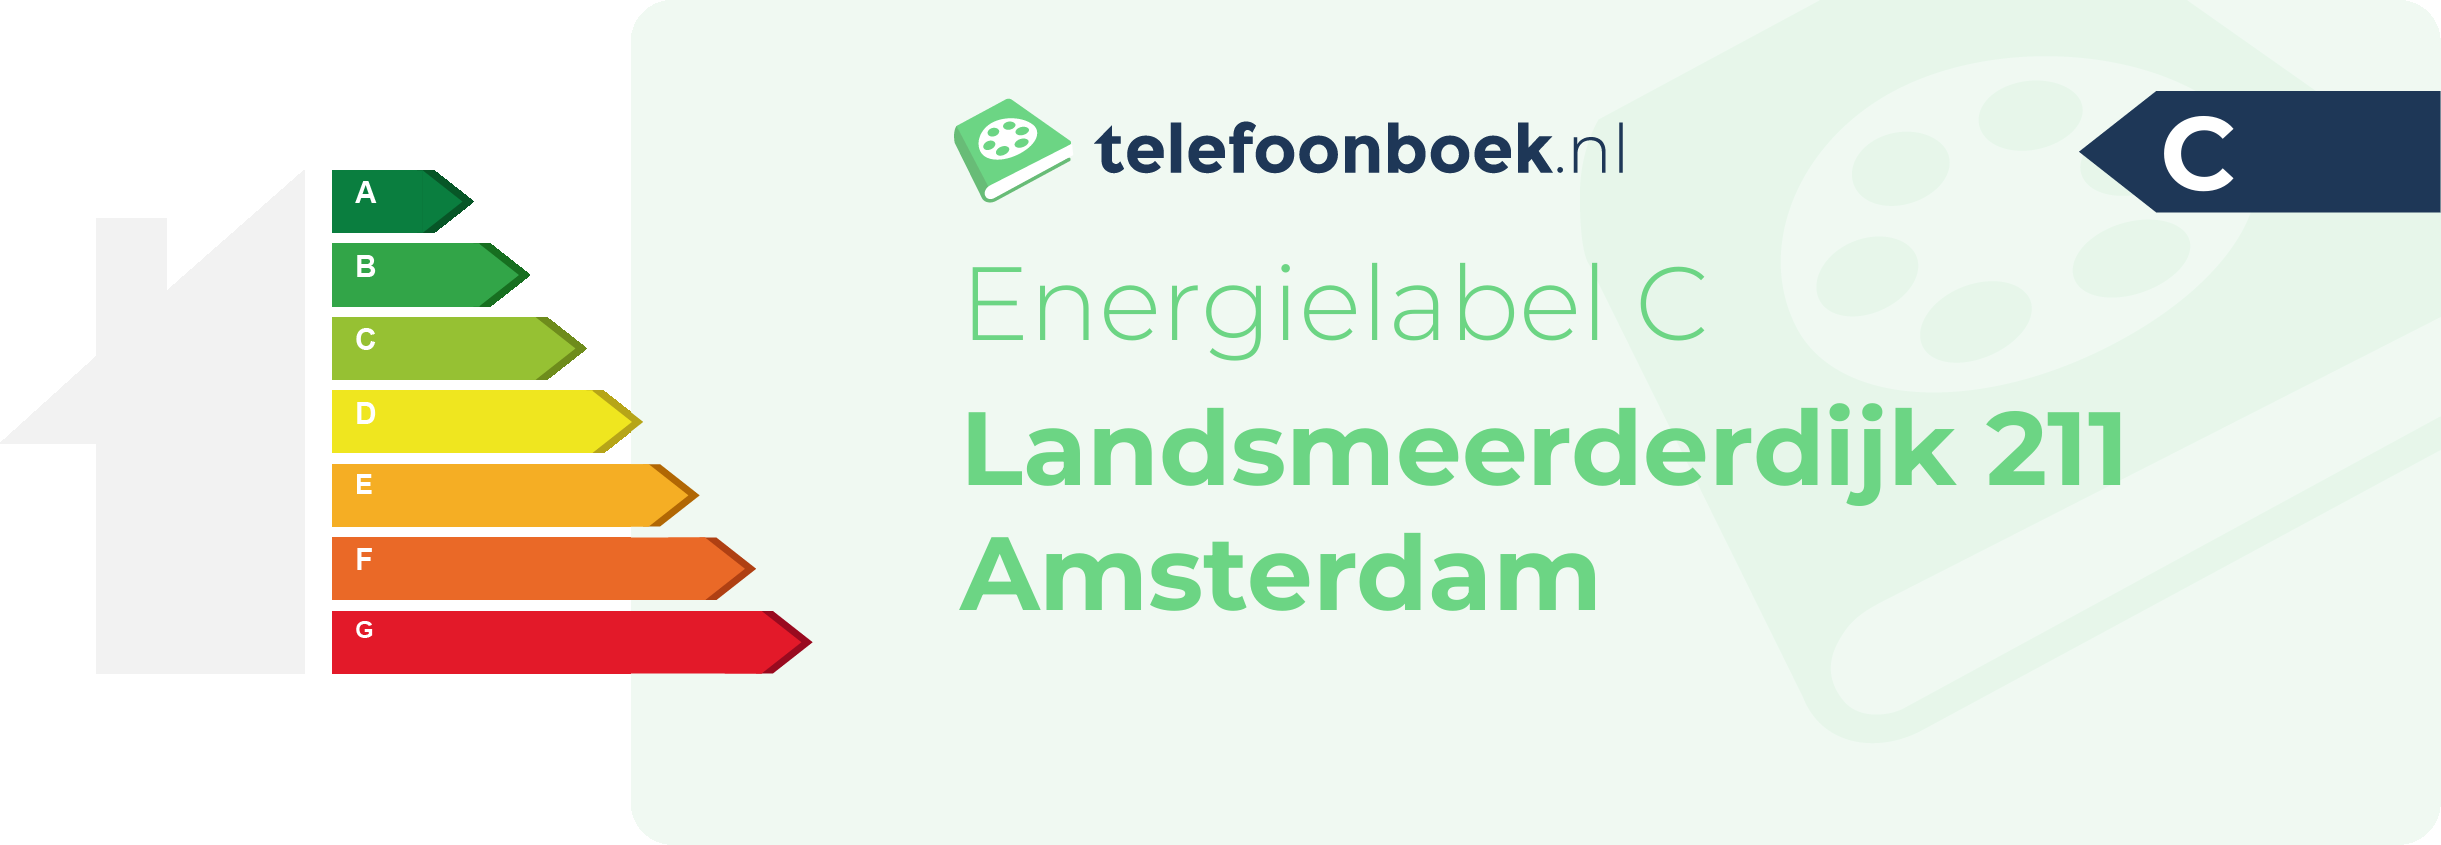 Energielabel Landsmeerderdijk 211 Amsterdam